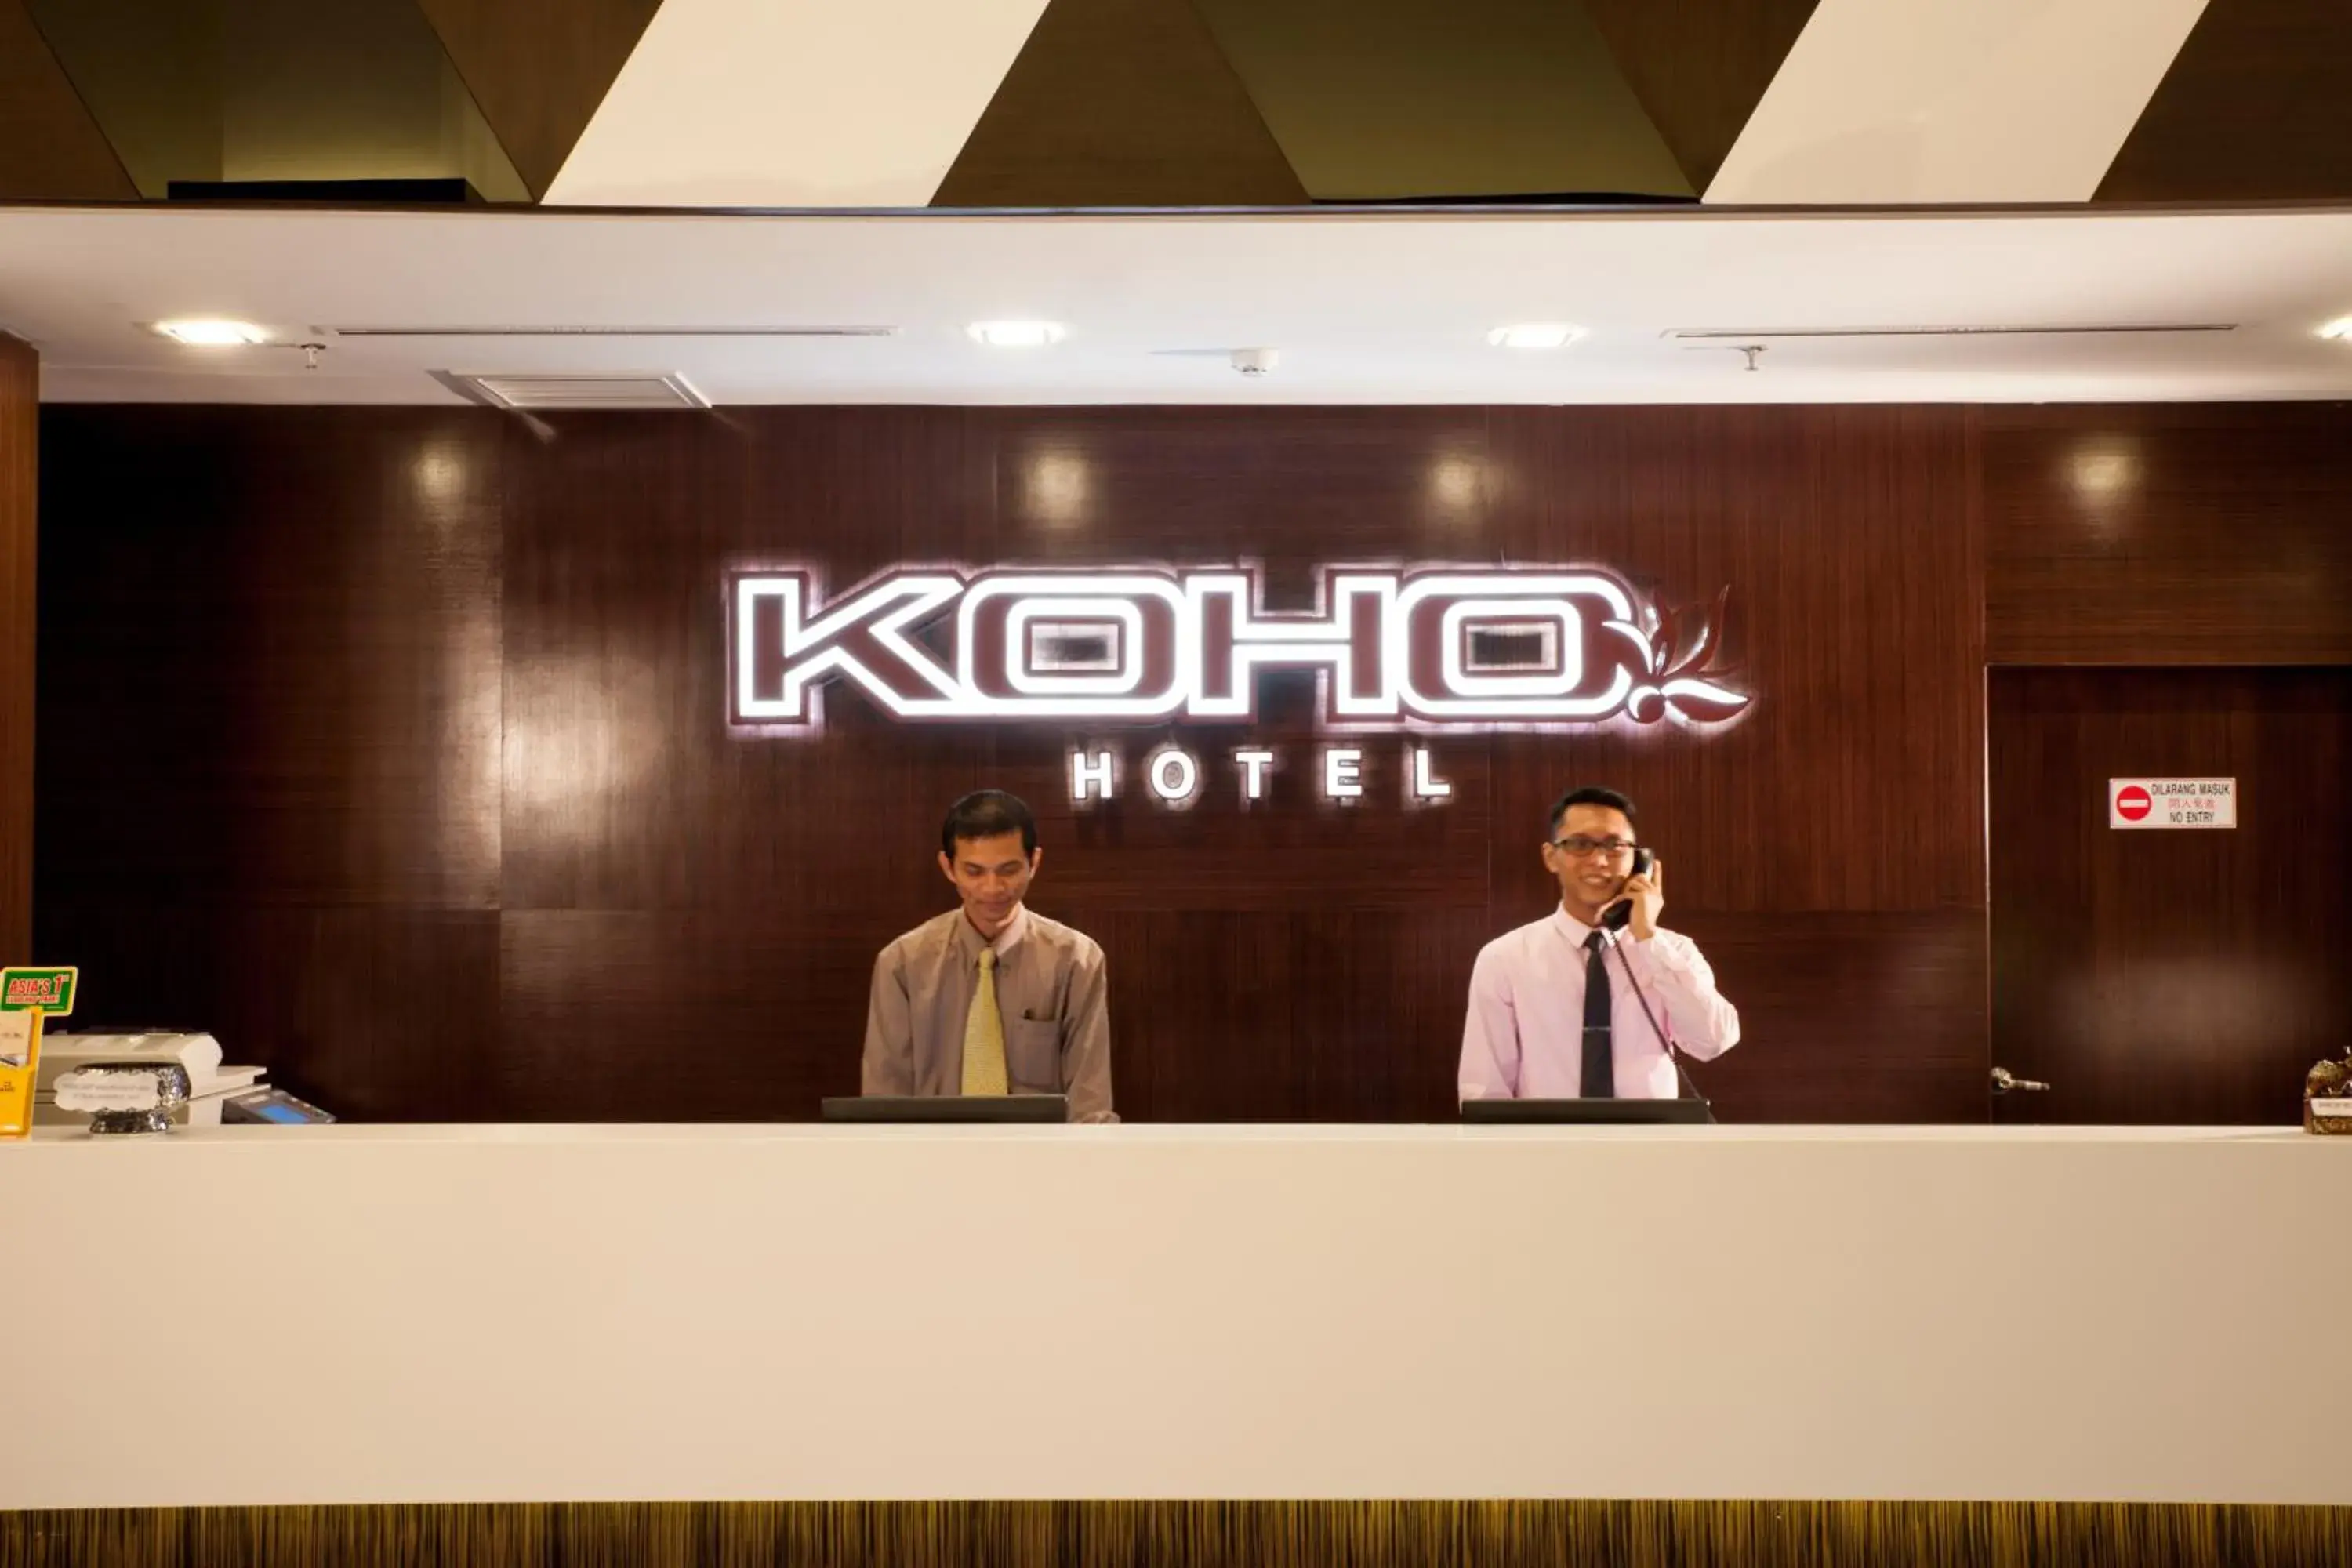 Staff in Koho Hotel